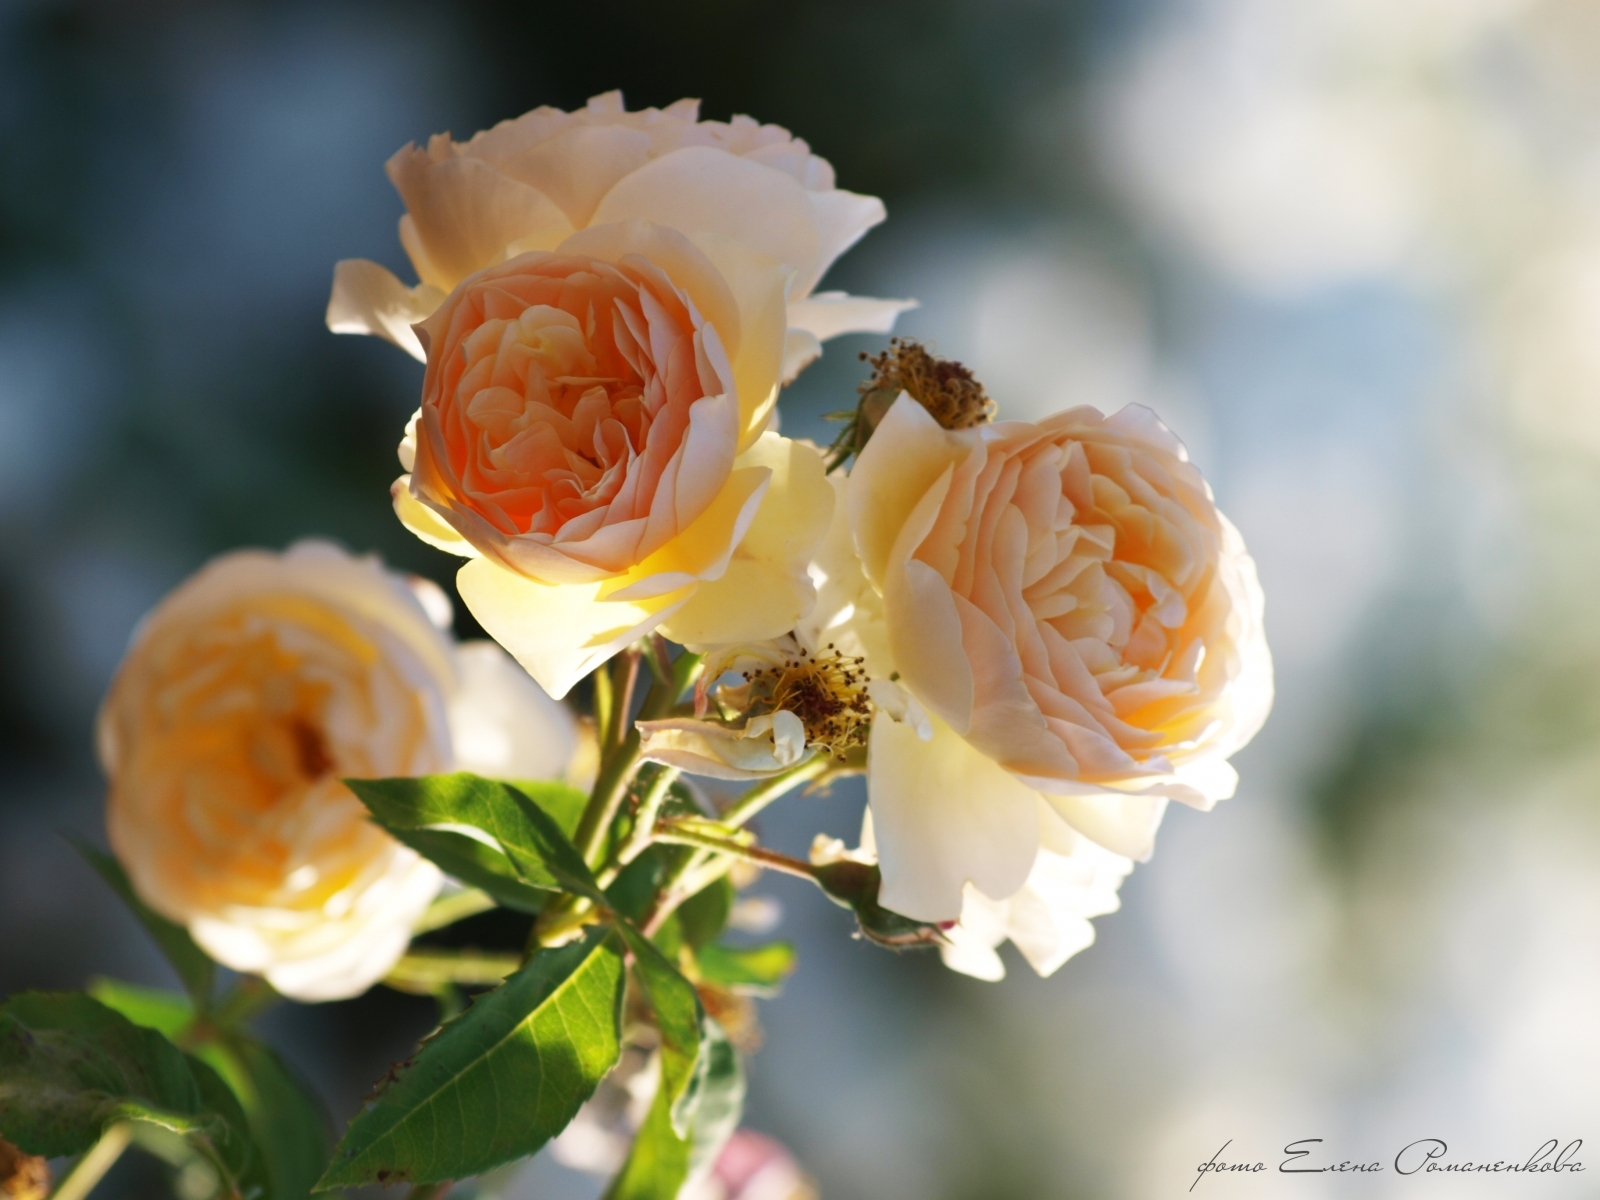 Скачать обои бесплатно Цветы, Растения, Розы картинка на рабочий стол ПК